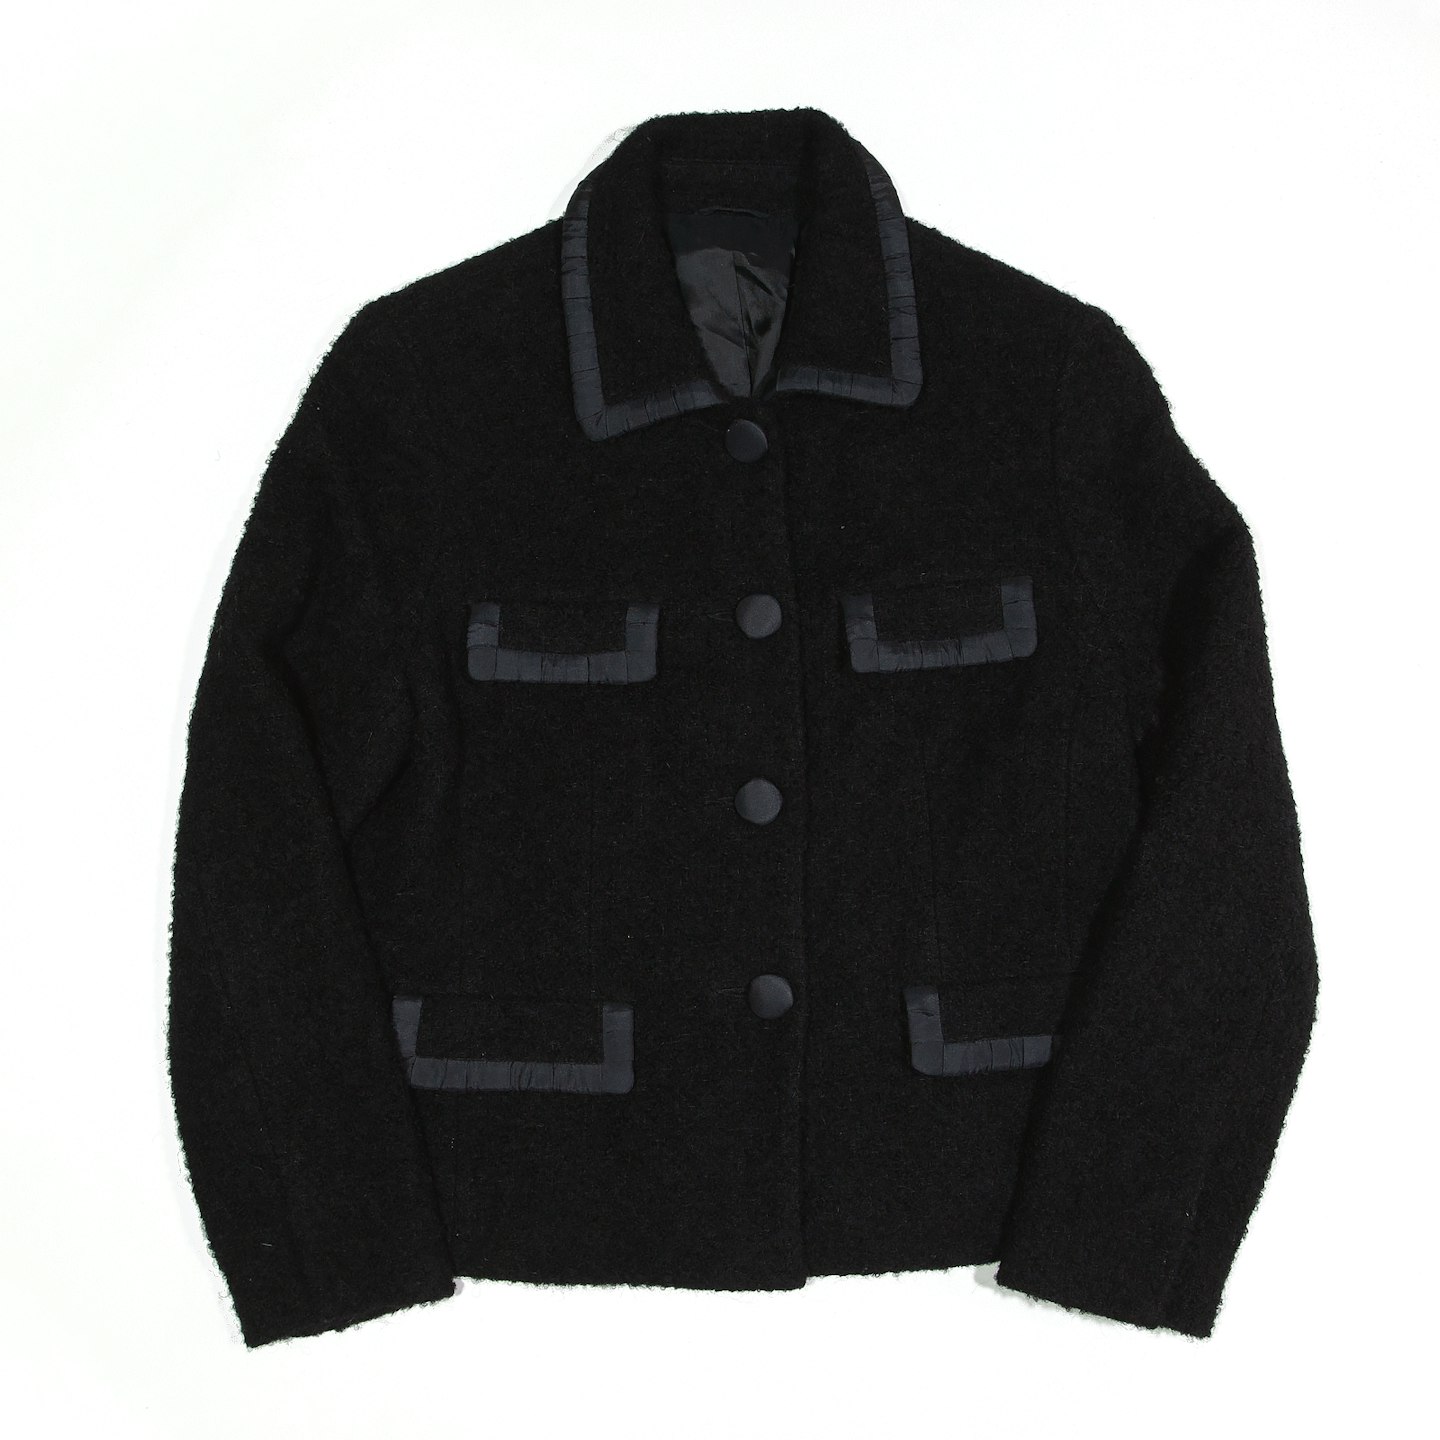 Vintage Wool-Blend Jacket